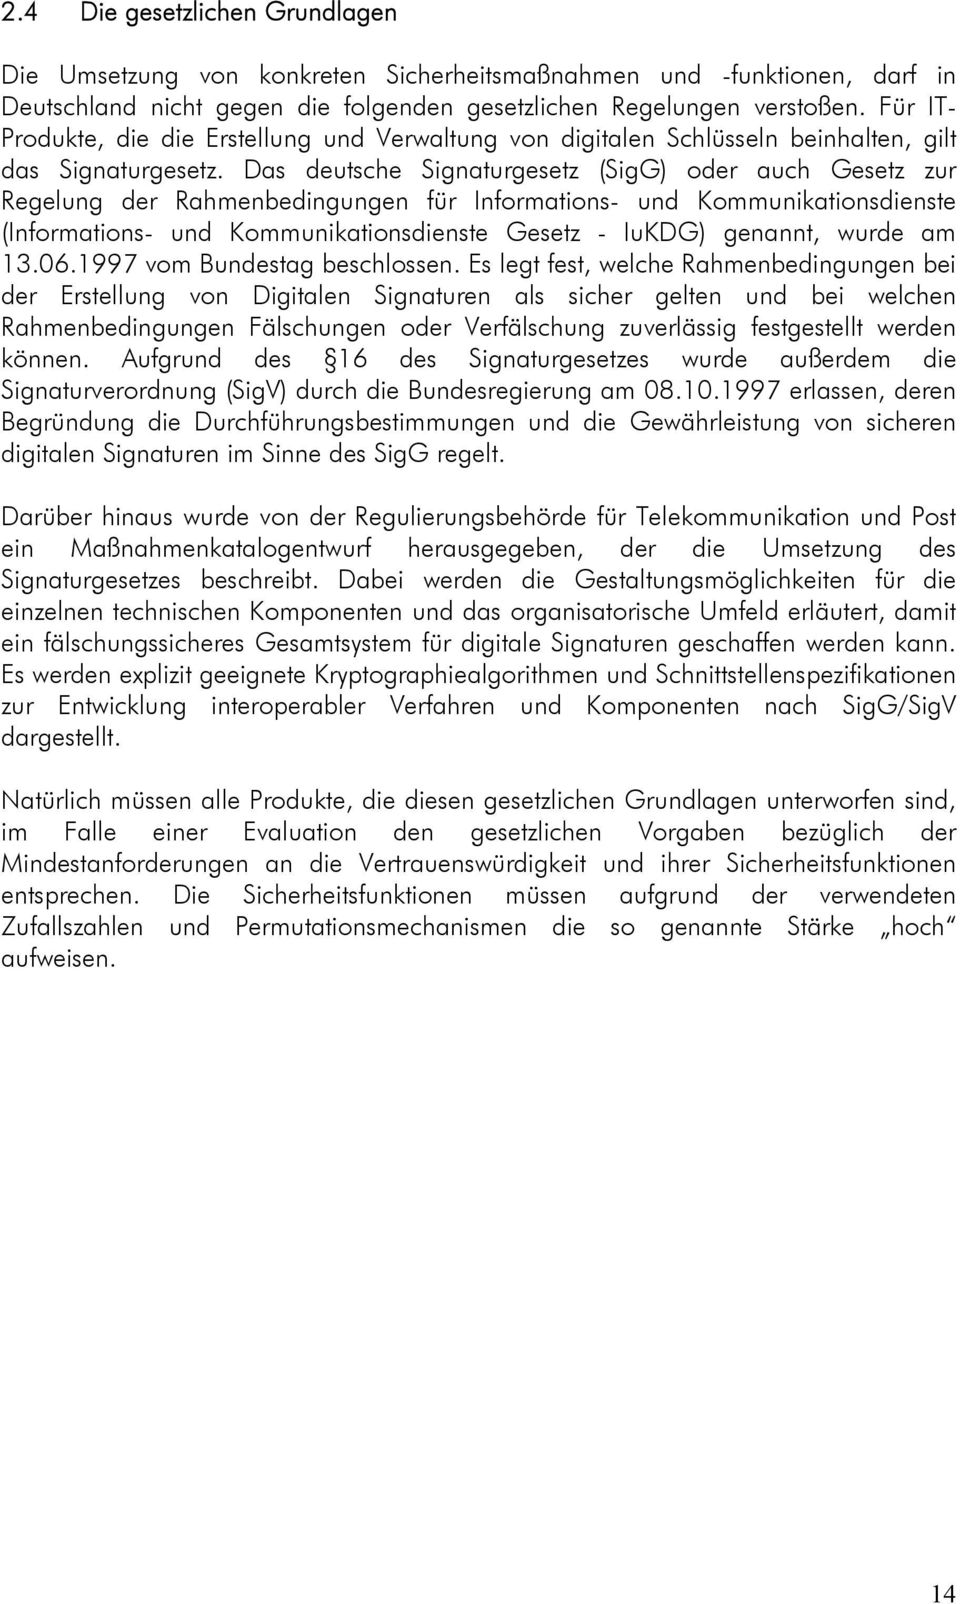 Das deutsche Signaturgesetz (SigG) oder auch Gesetz zur Regelung der Rahmenbedingungen für Informations- und Kommunikationsdienste (Informations- und Kommunikationsdienste Gesetz - IuKDG) genannt,